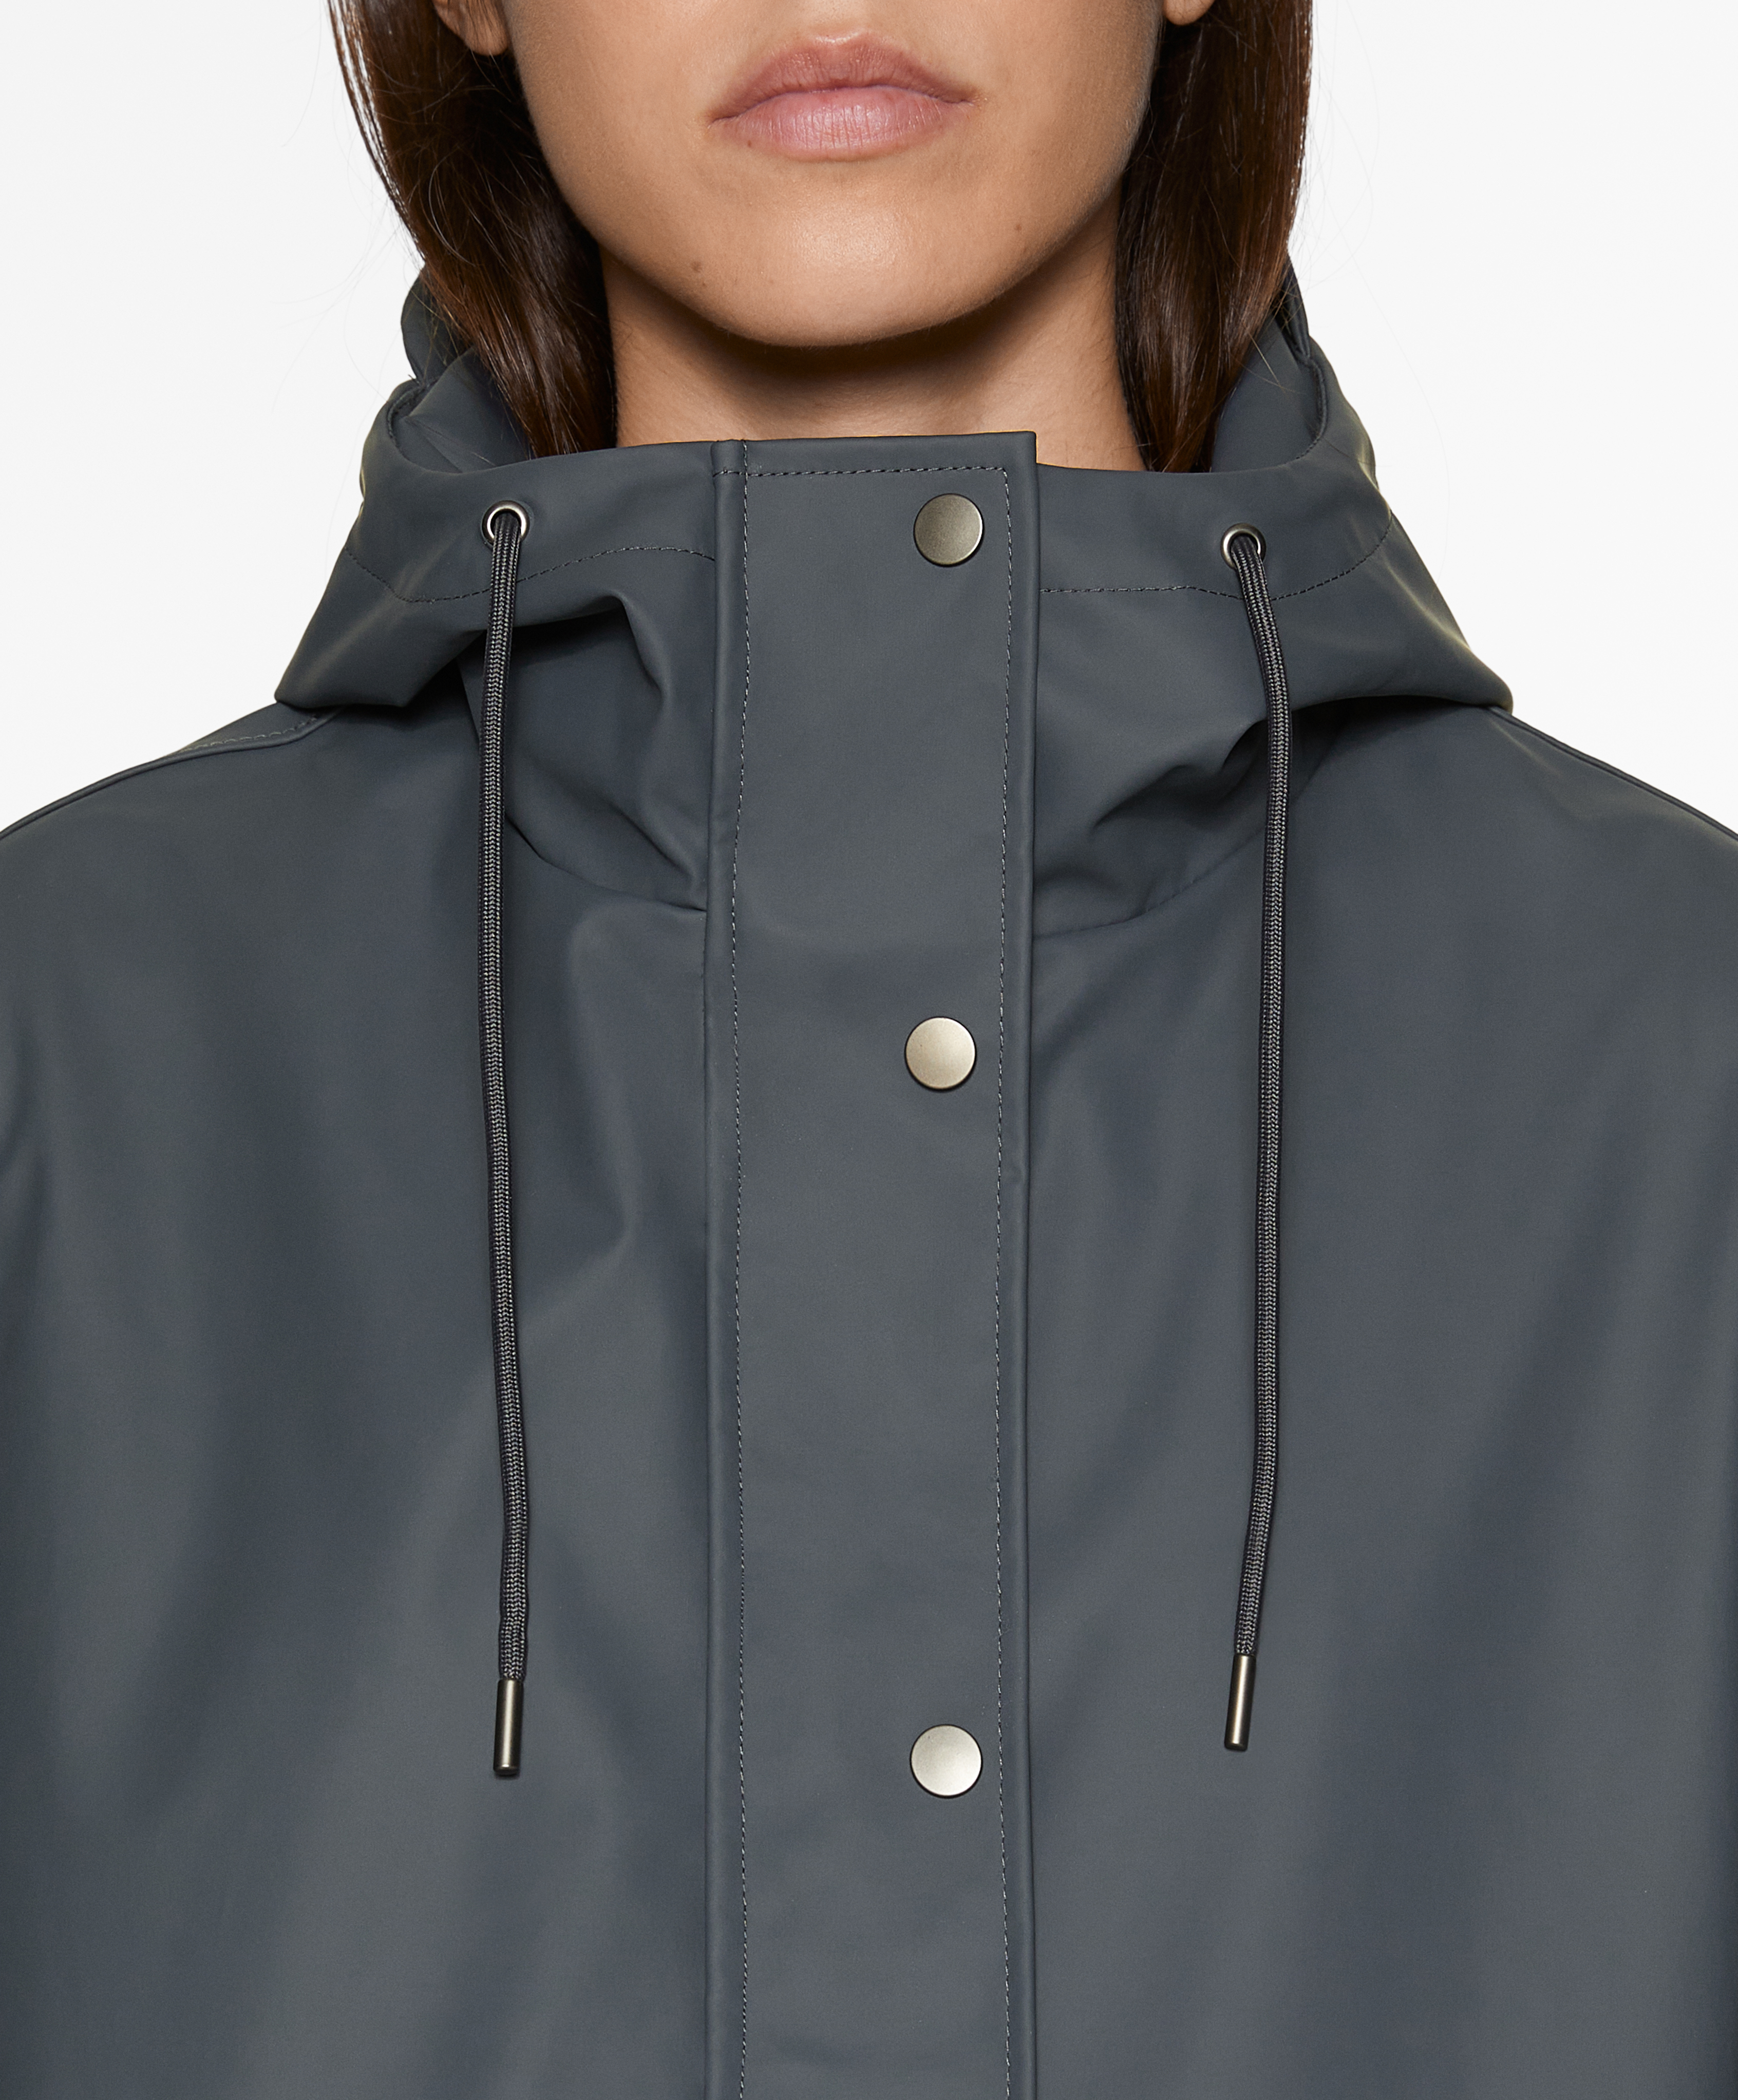 Long 3k water-resistant jacket